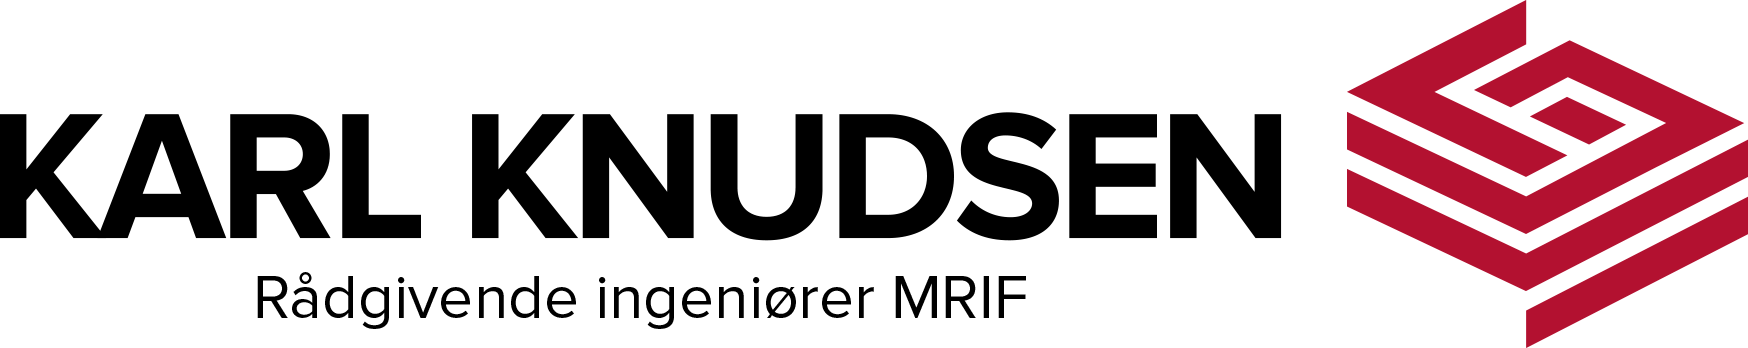 karl-knudsen-logo